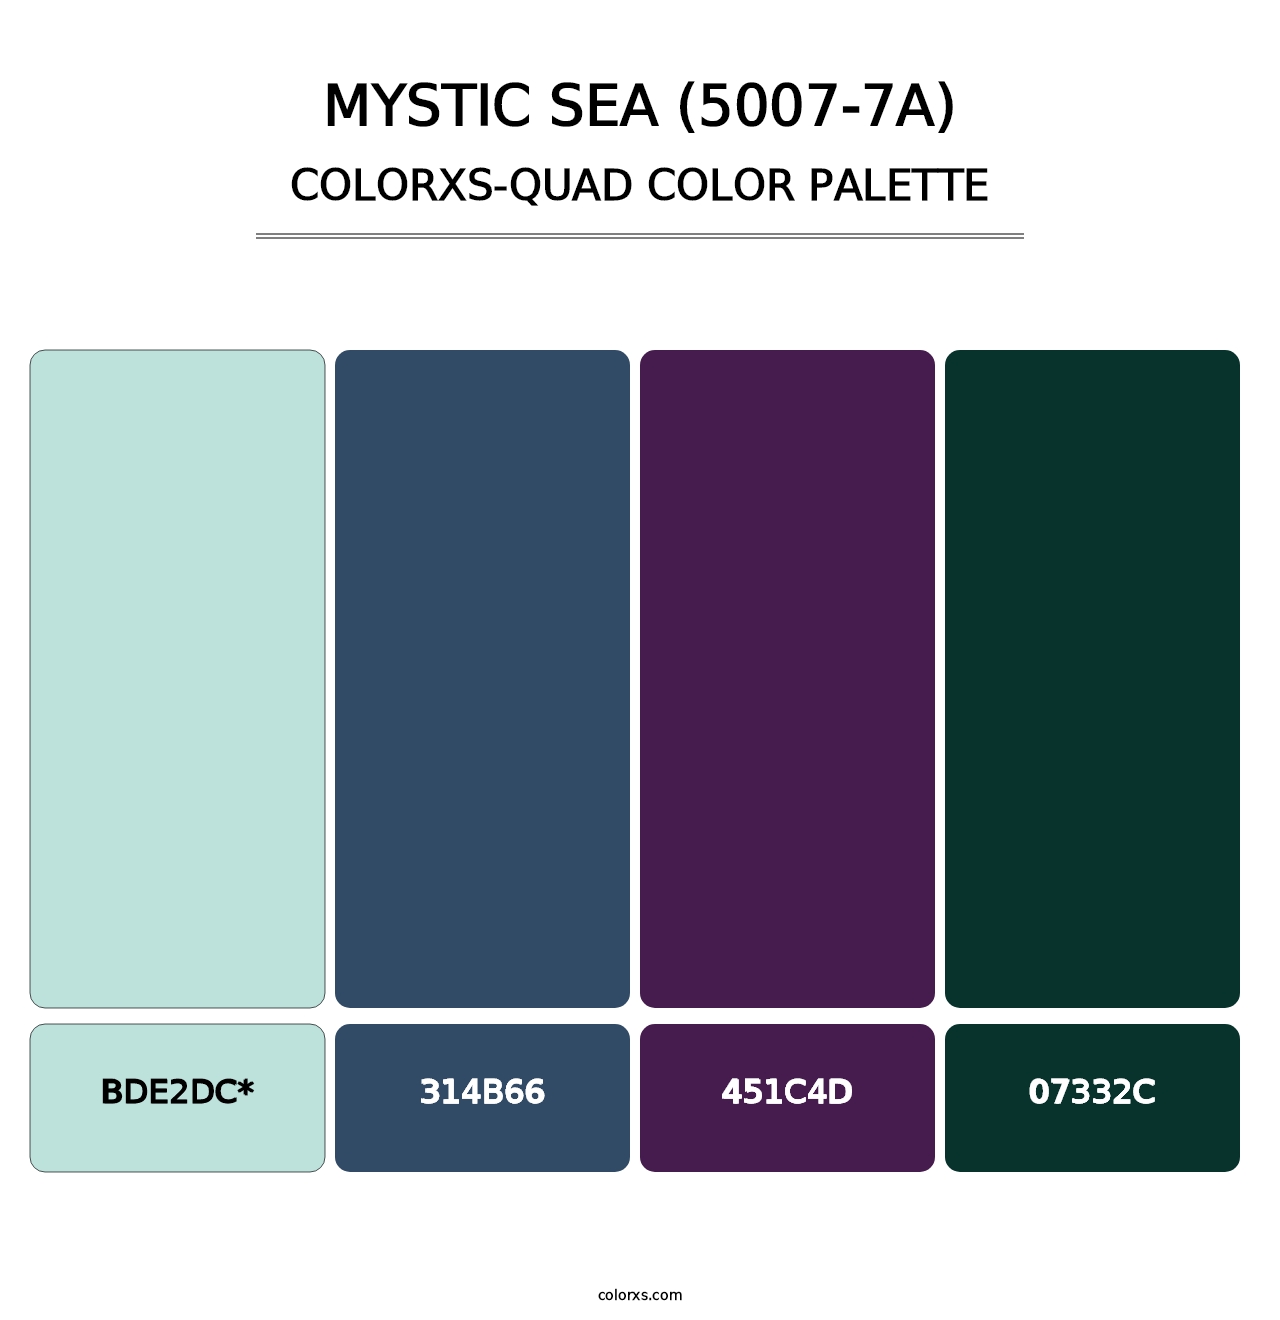 Mystic Sea (5007-7A) - Colorxs Quad Palette